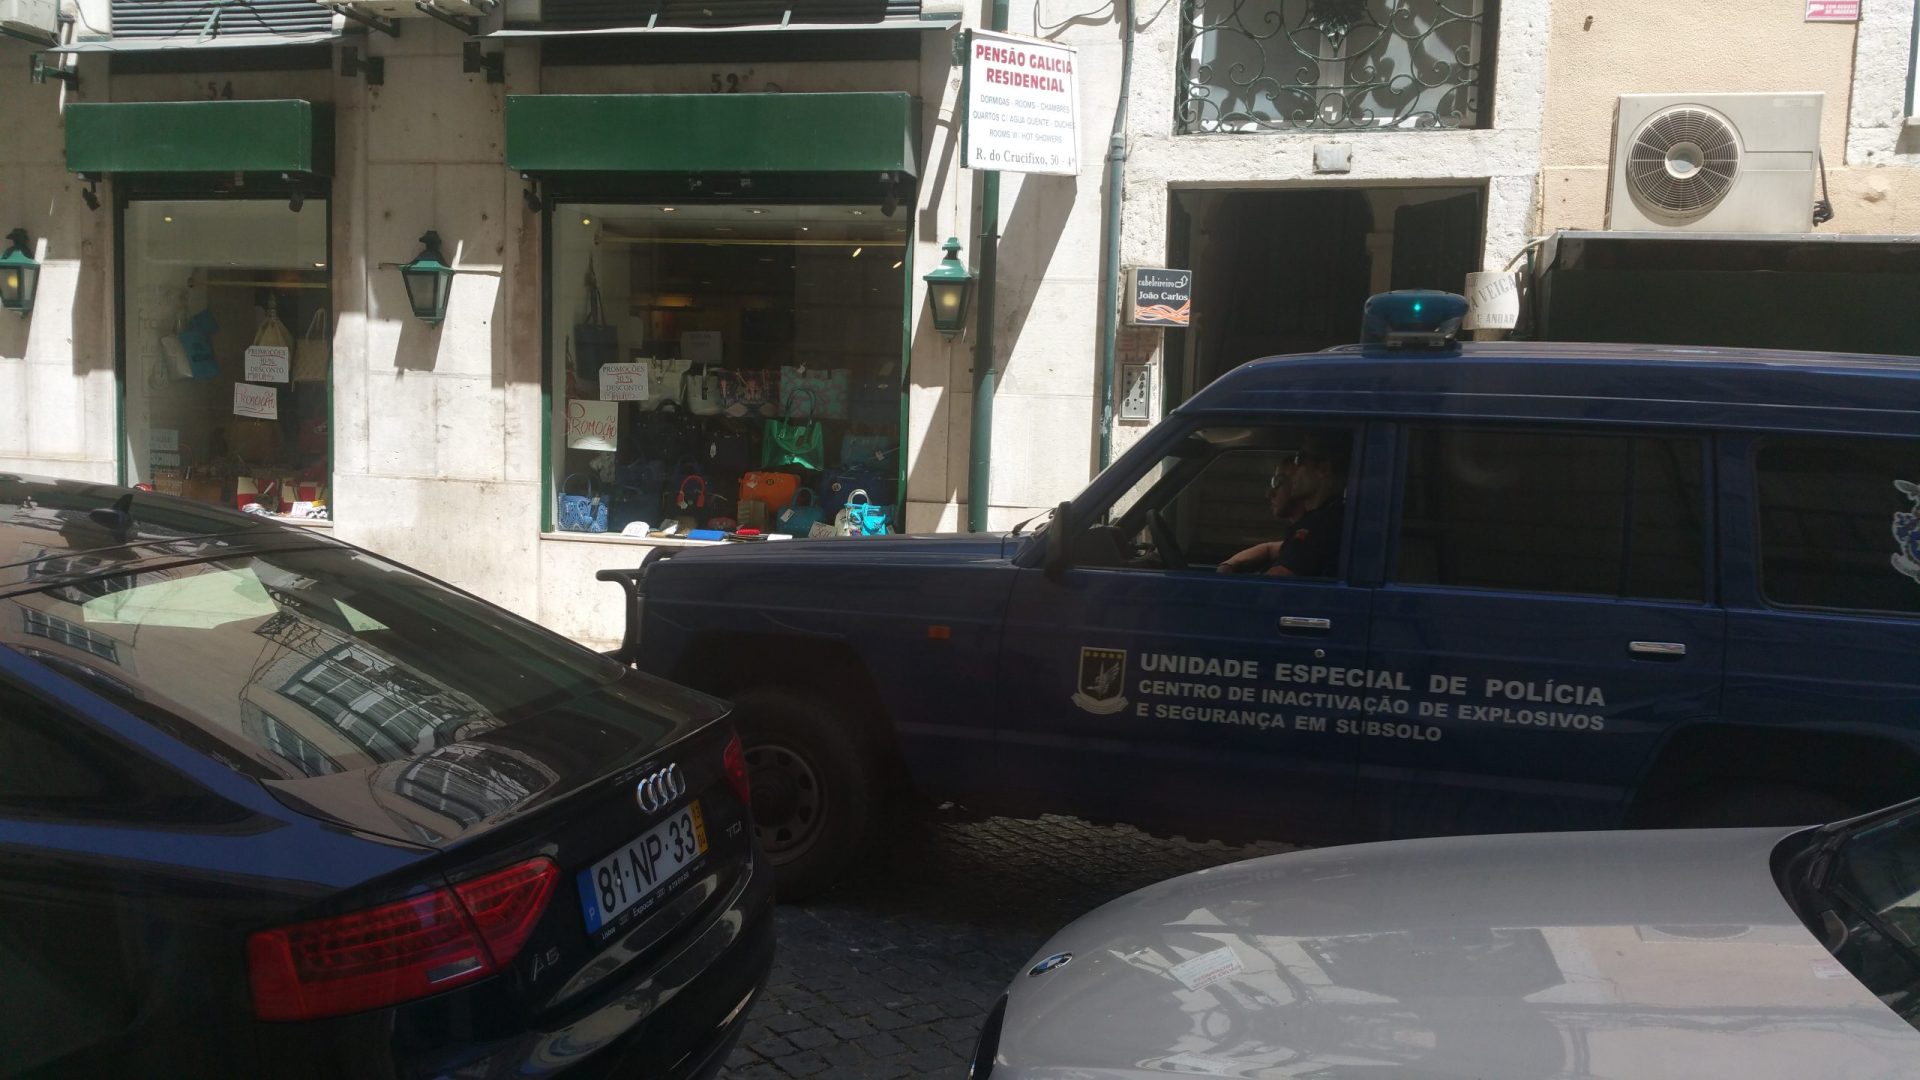 Lisboa. Ameaça de bomba cortou rua da Baixa lisboeta